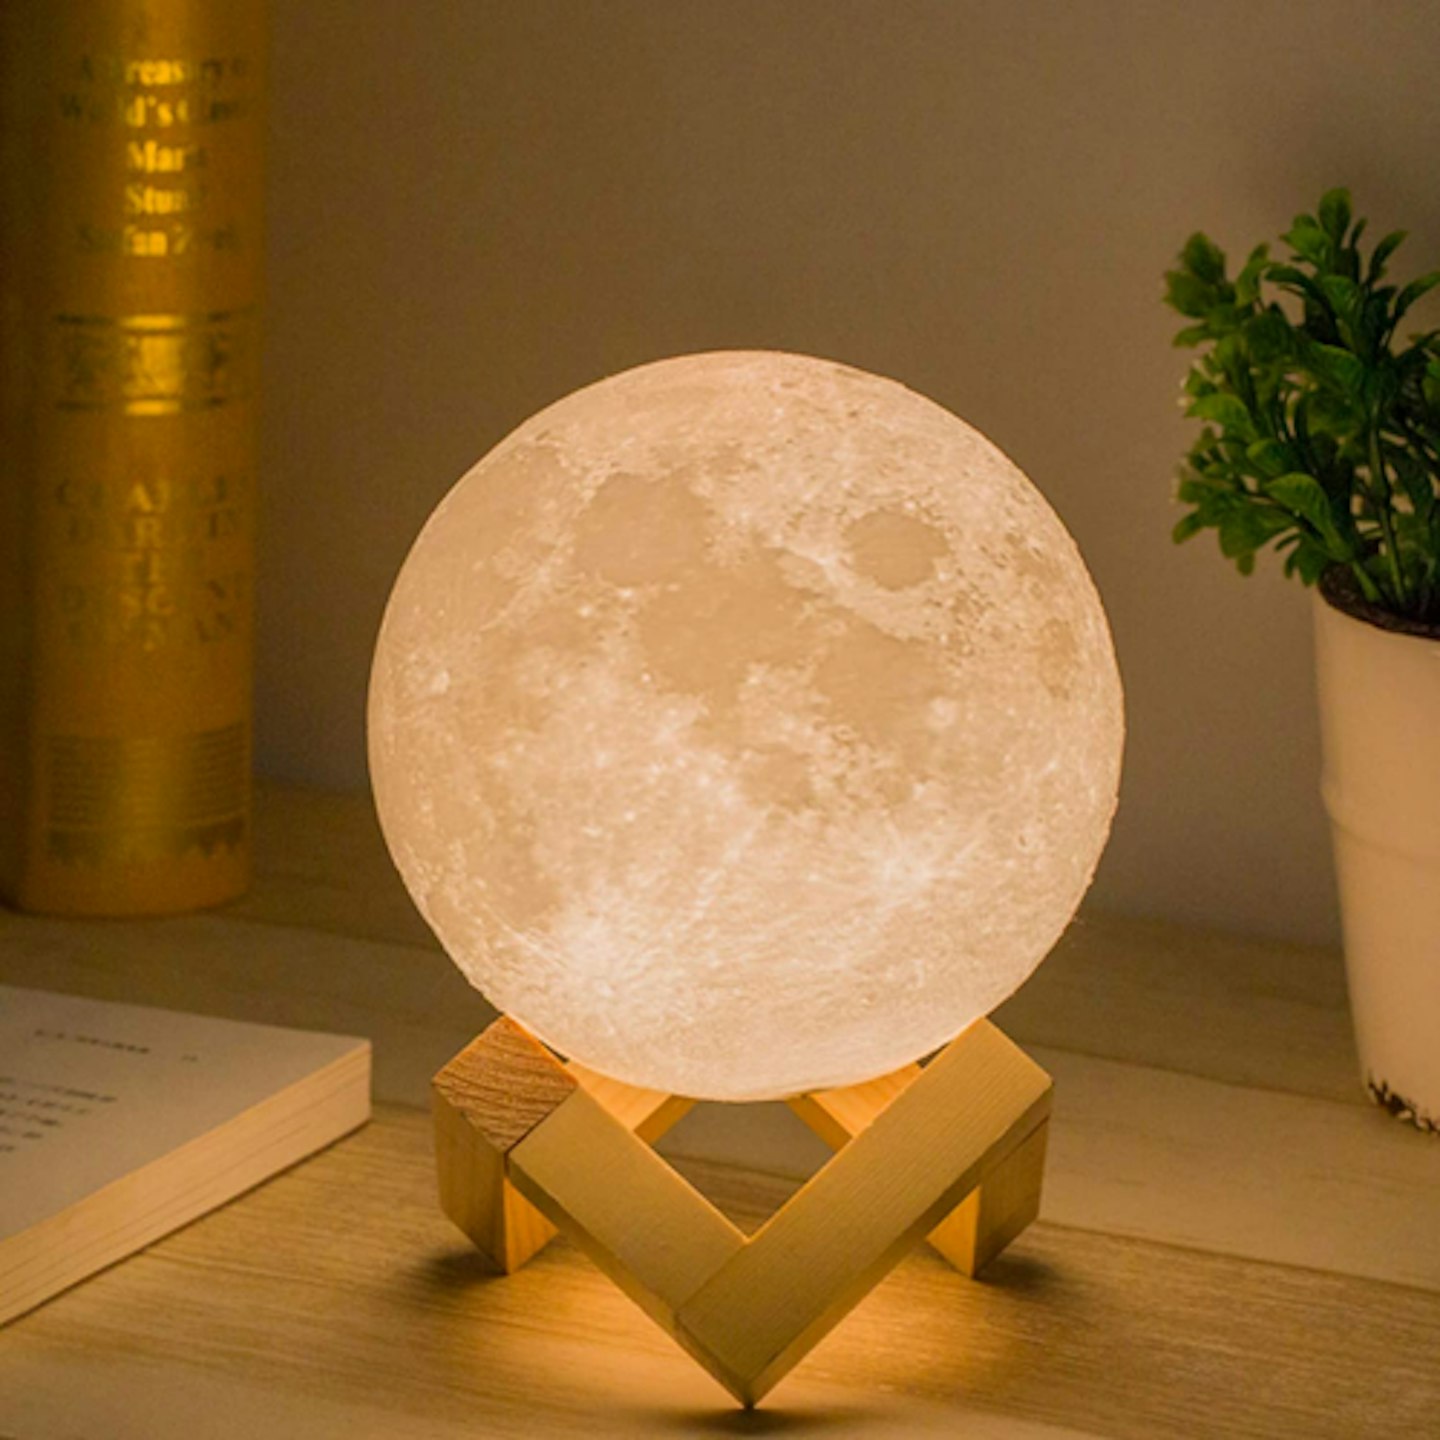 Methun 3D Printed Moon Lamp